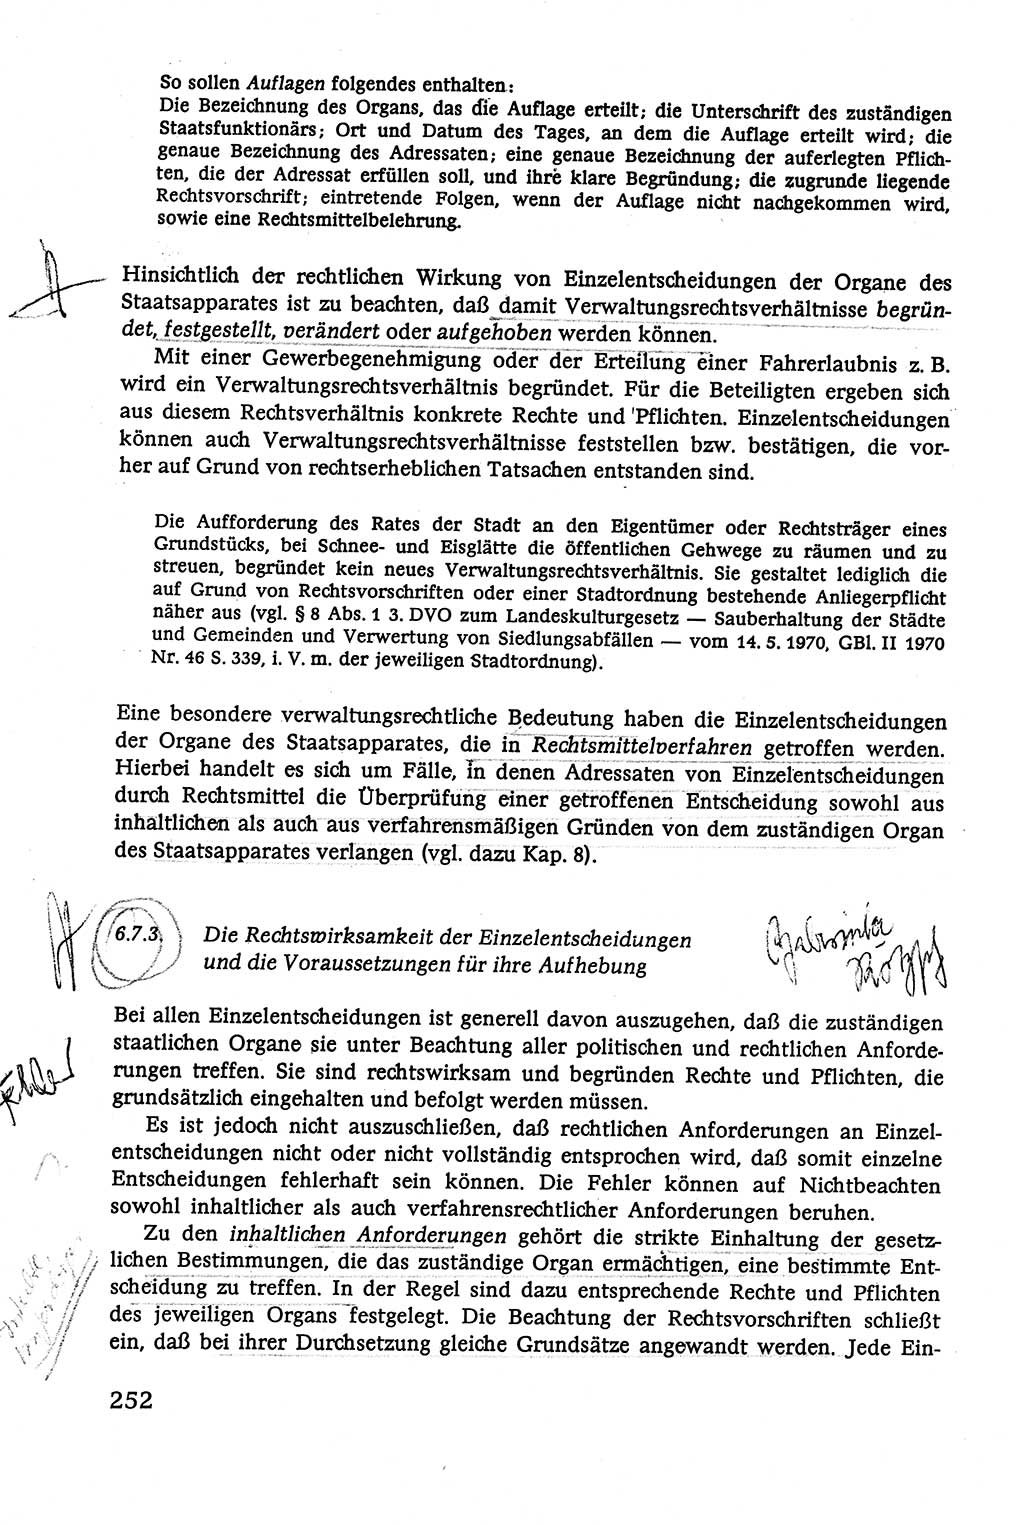 Verwaltungsrecht [Deutsche Demokratische Republik (DDR)], Lehrbuch 1979, Seite 252 (Verw.-R. DDR Lb. 1979, S. 252)